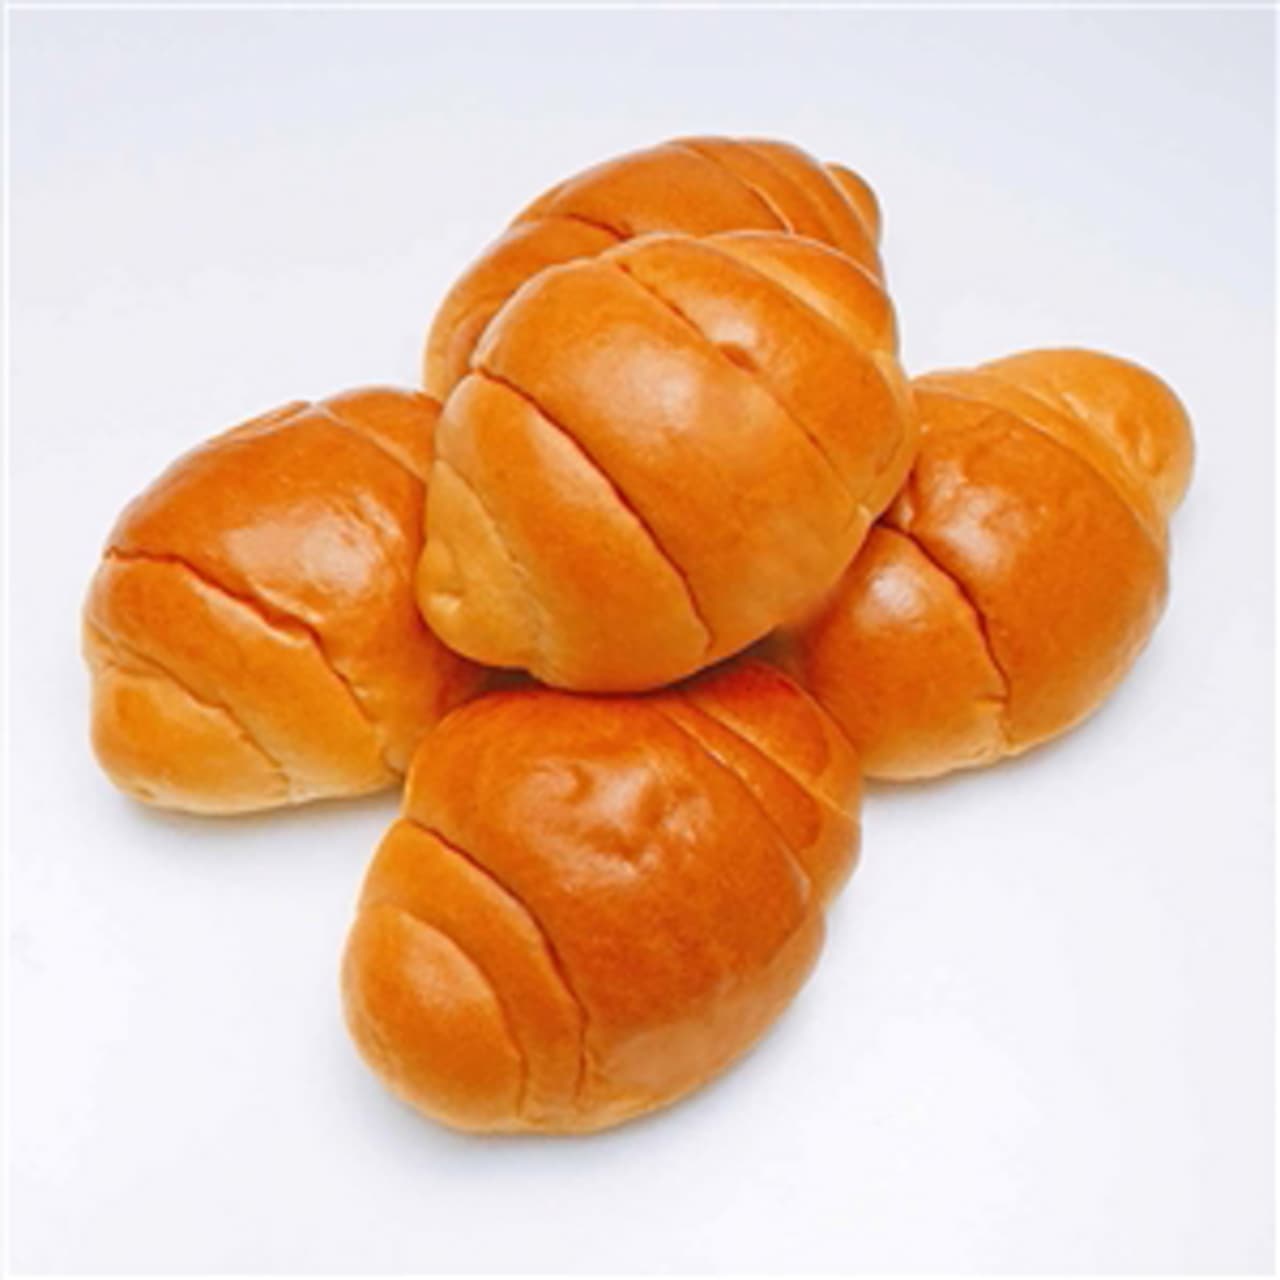 Kimuraya Founder's New Breads for June